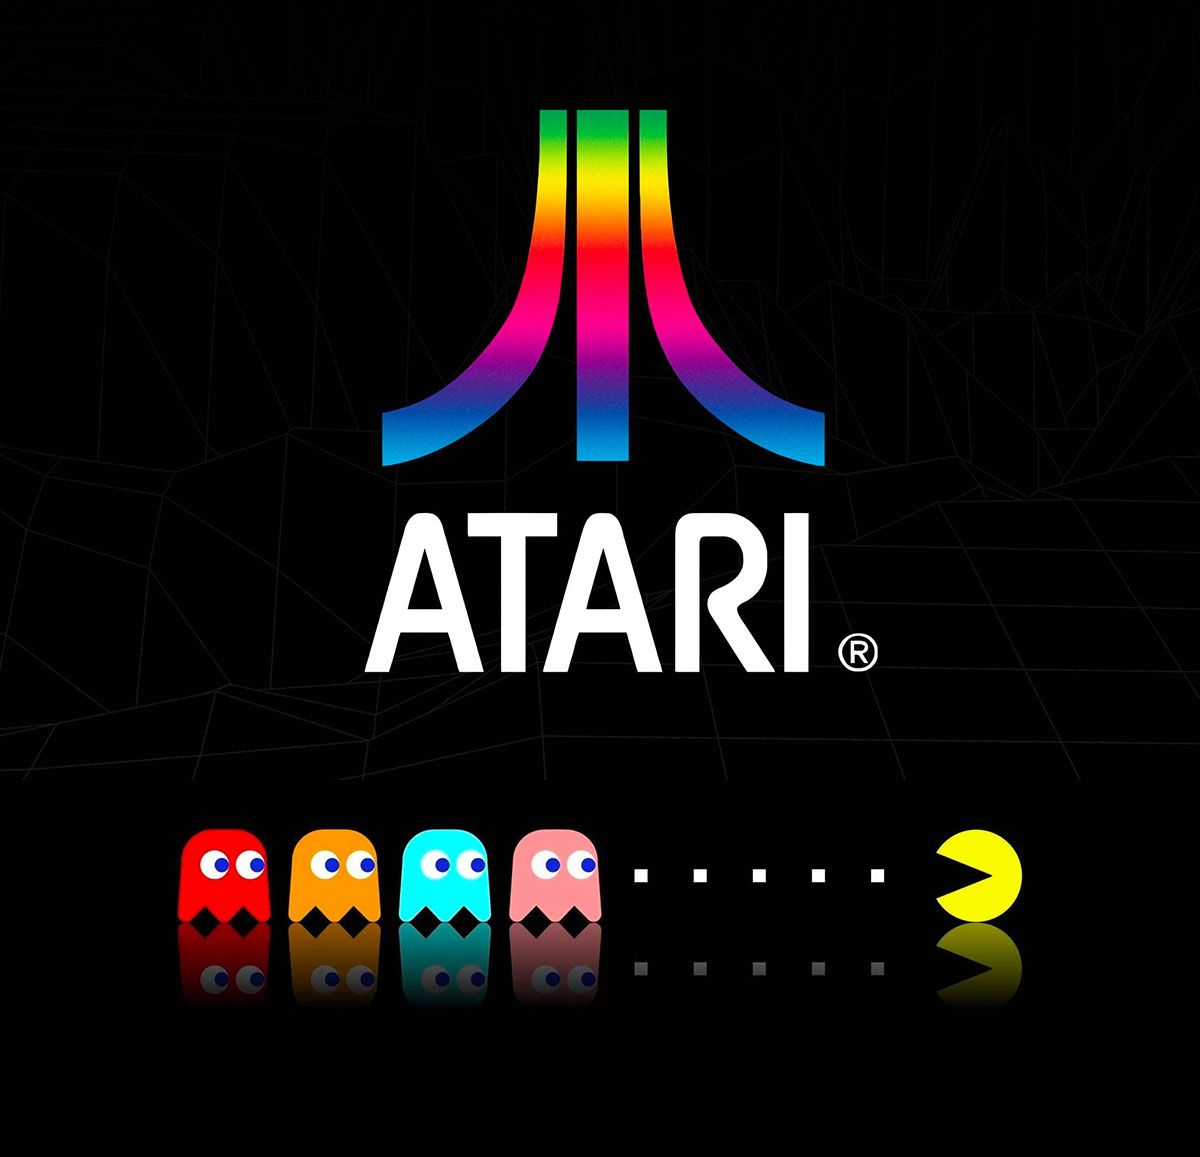 Nome do produto: Atari